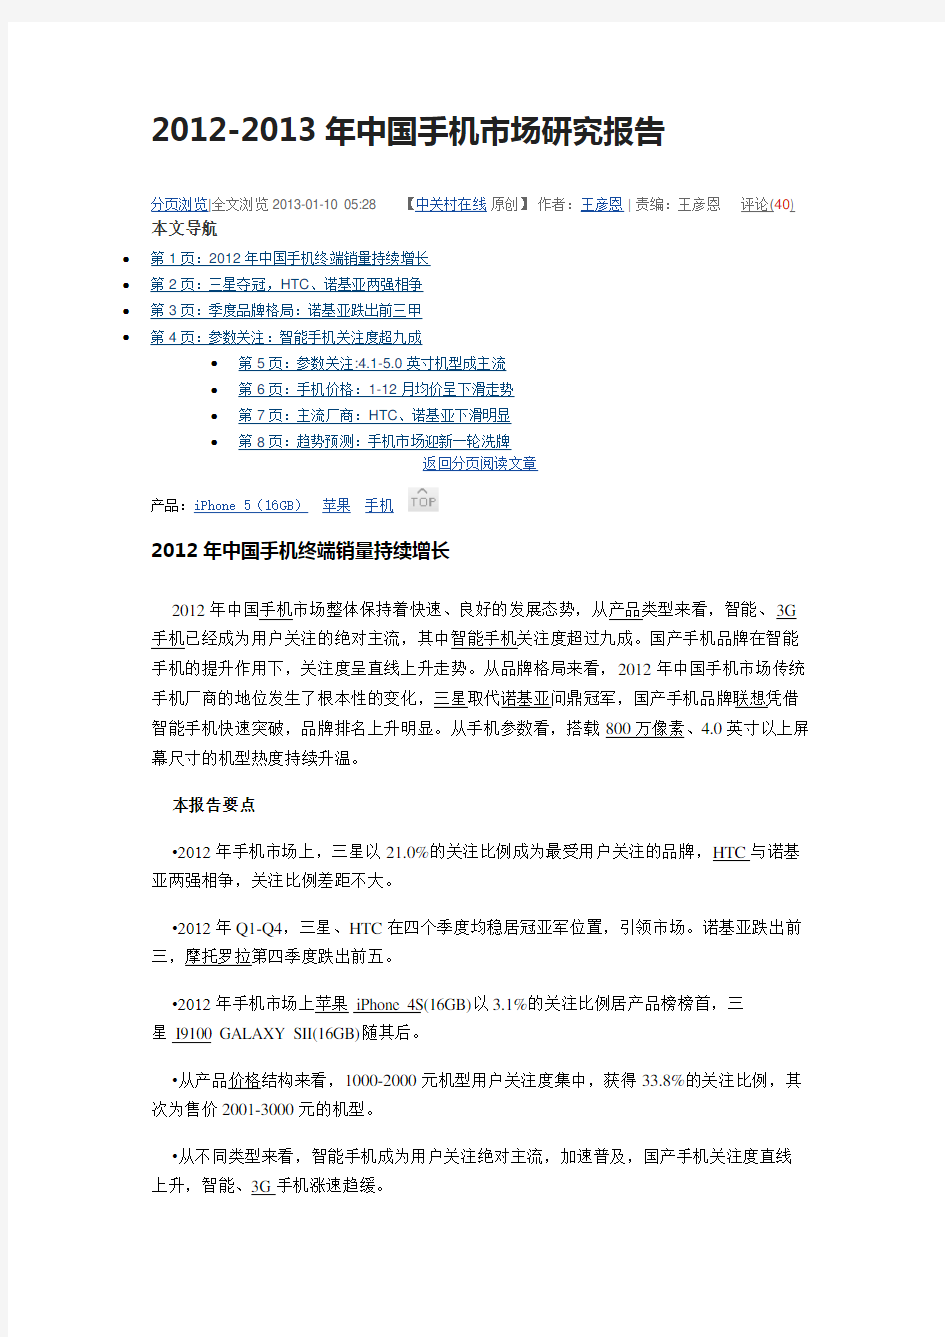 2012-2013年中国手机市场研究报告